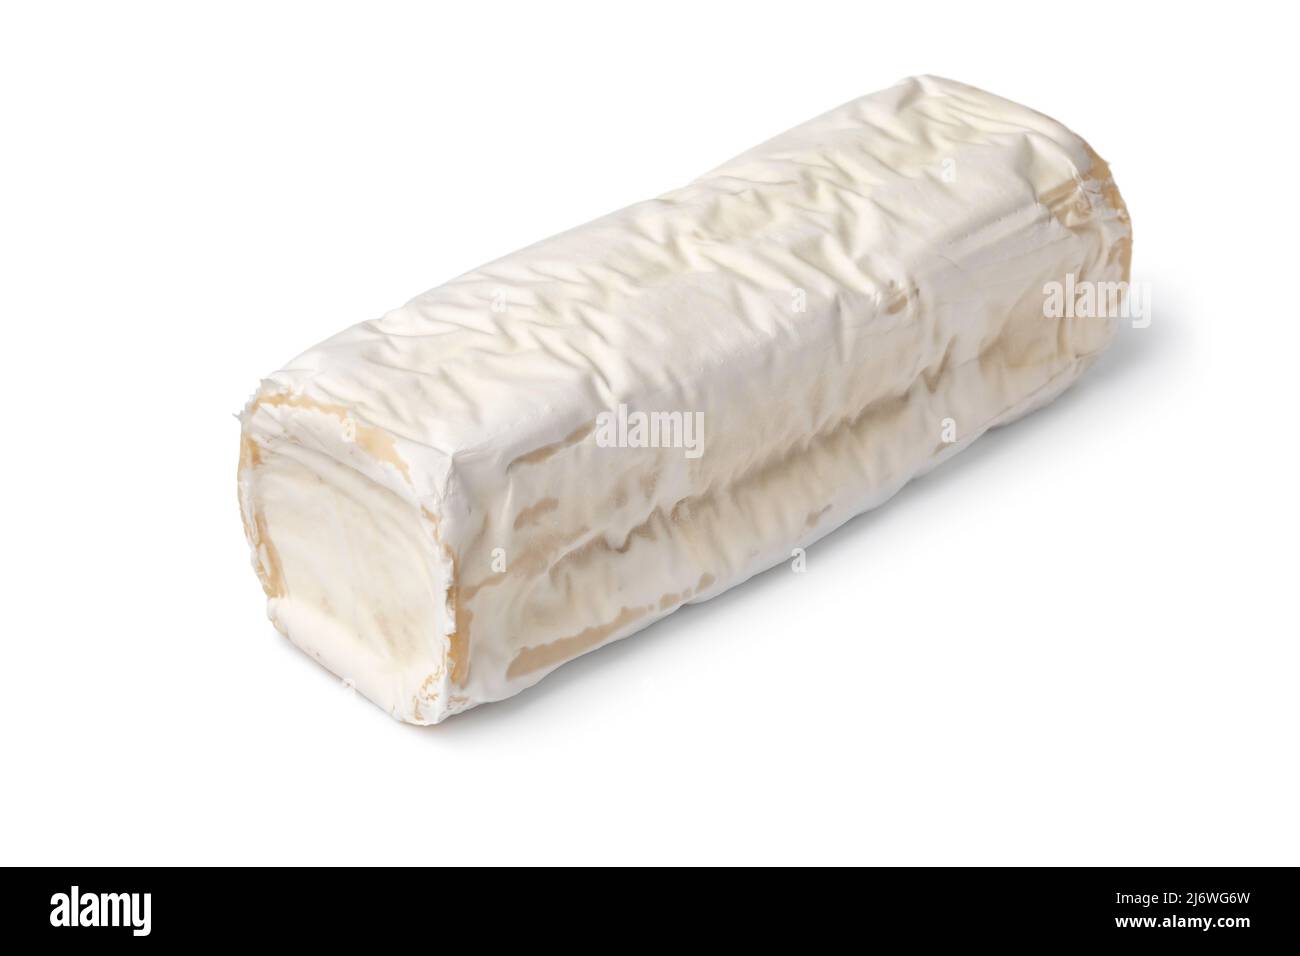 Buche de Chevre entière, fromage de chèvre, avec une croûte blanche isolée sur fond blanc de gros plan Banque D'Images